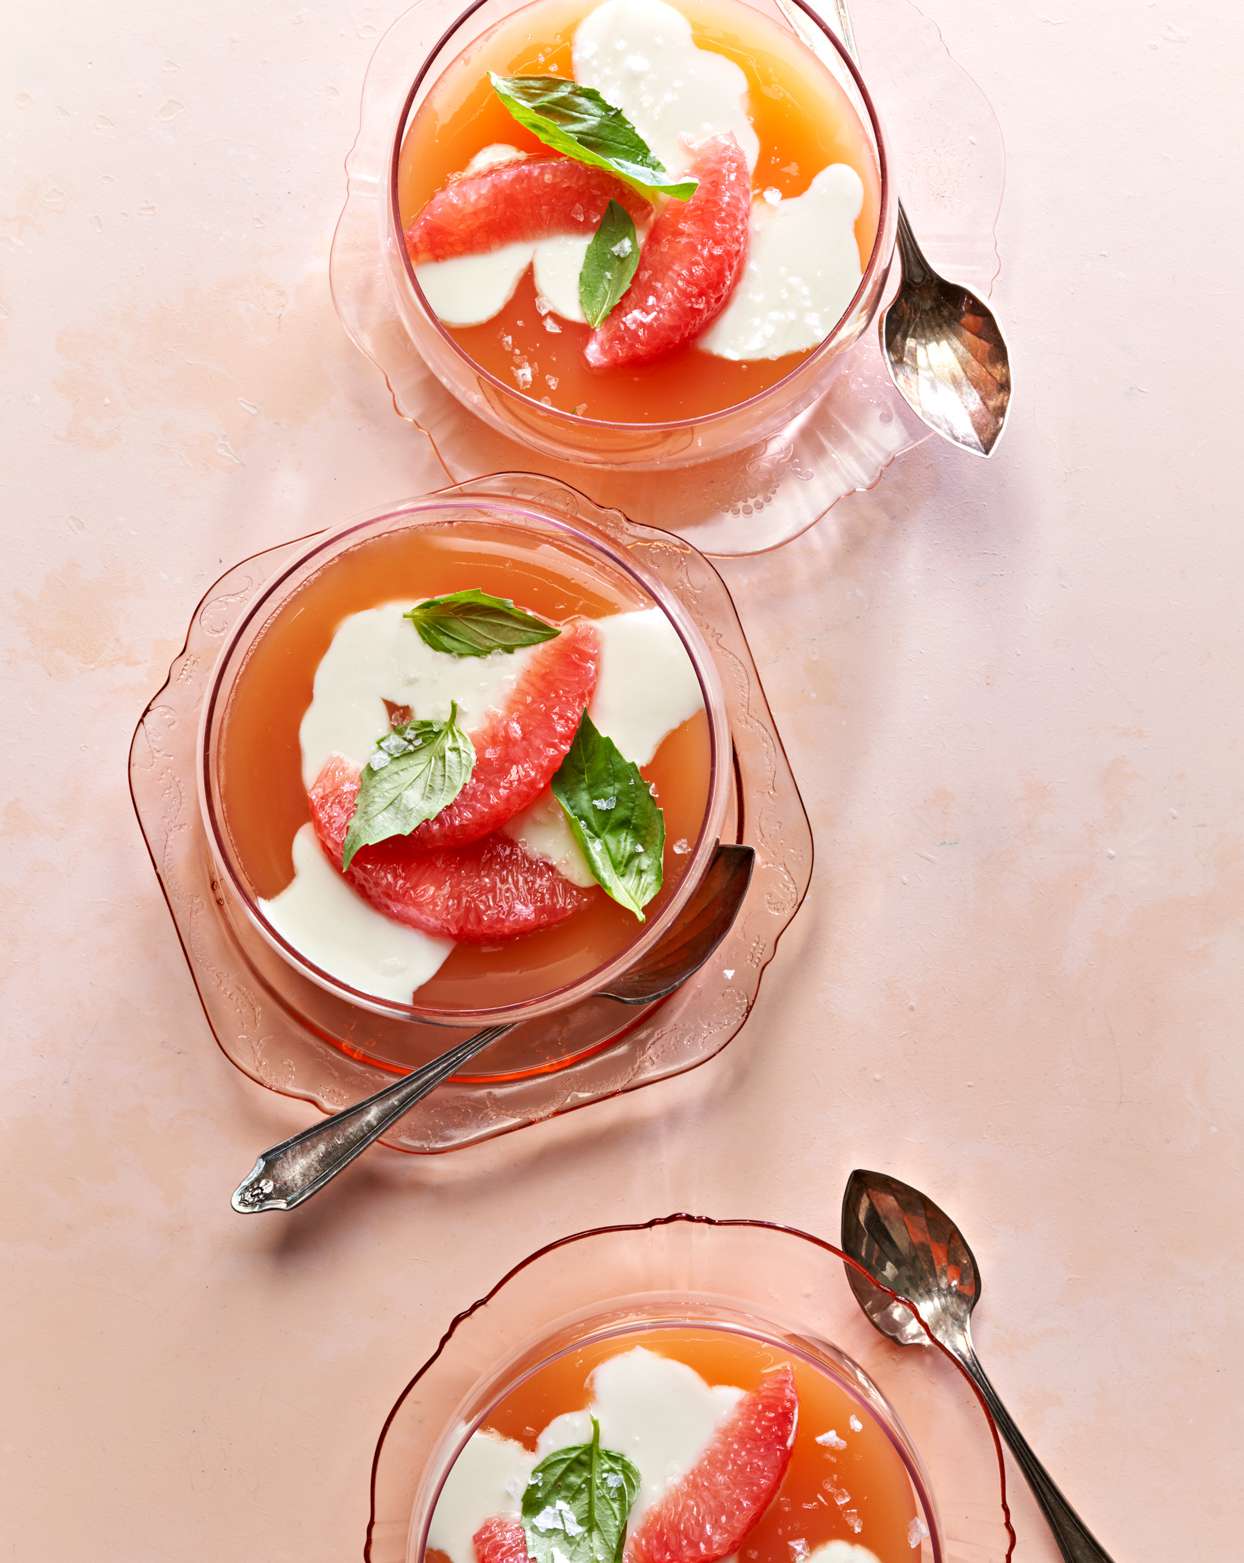 Basil-Yogurt Panna Cotta with Grapefruit Gelée